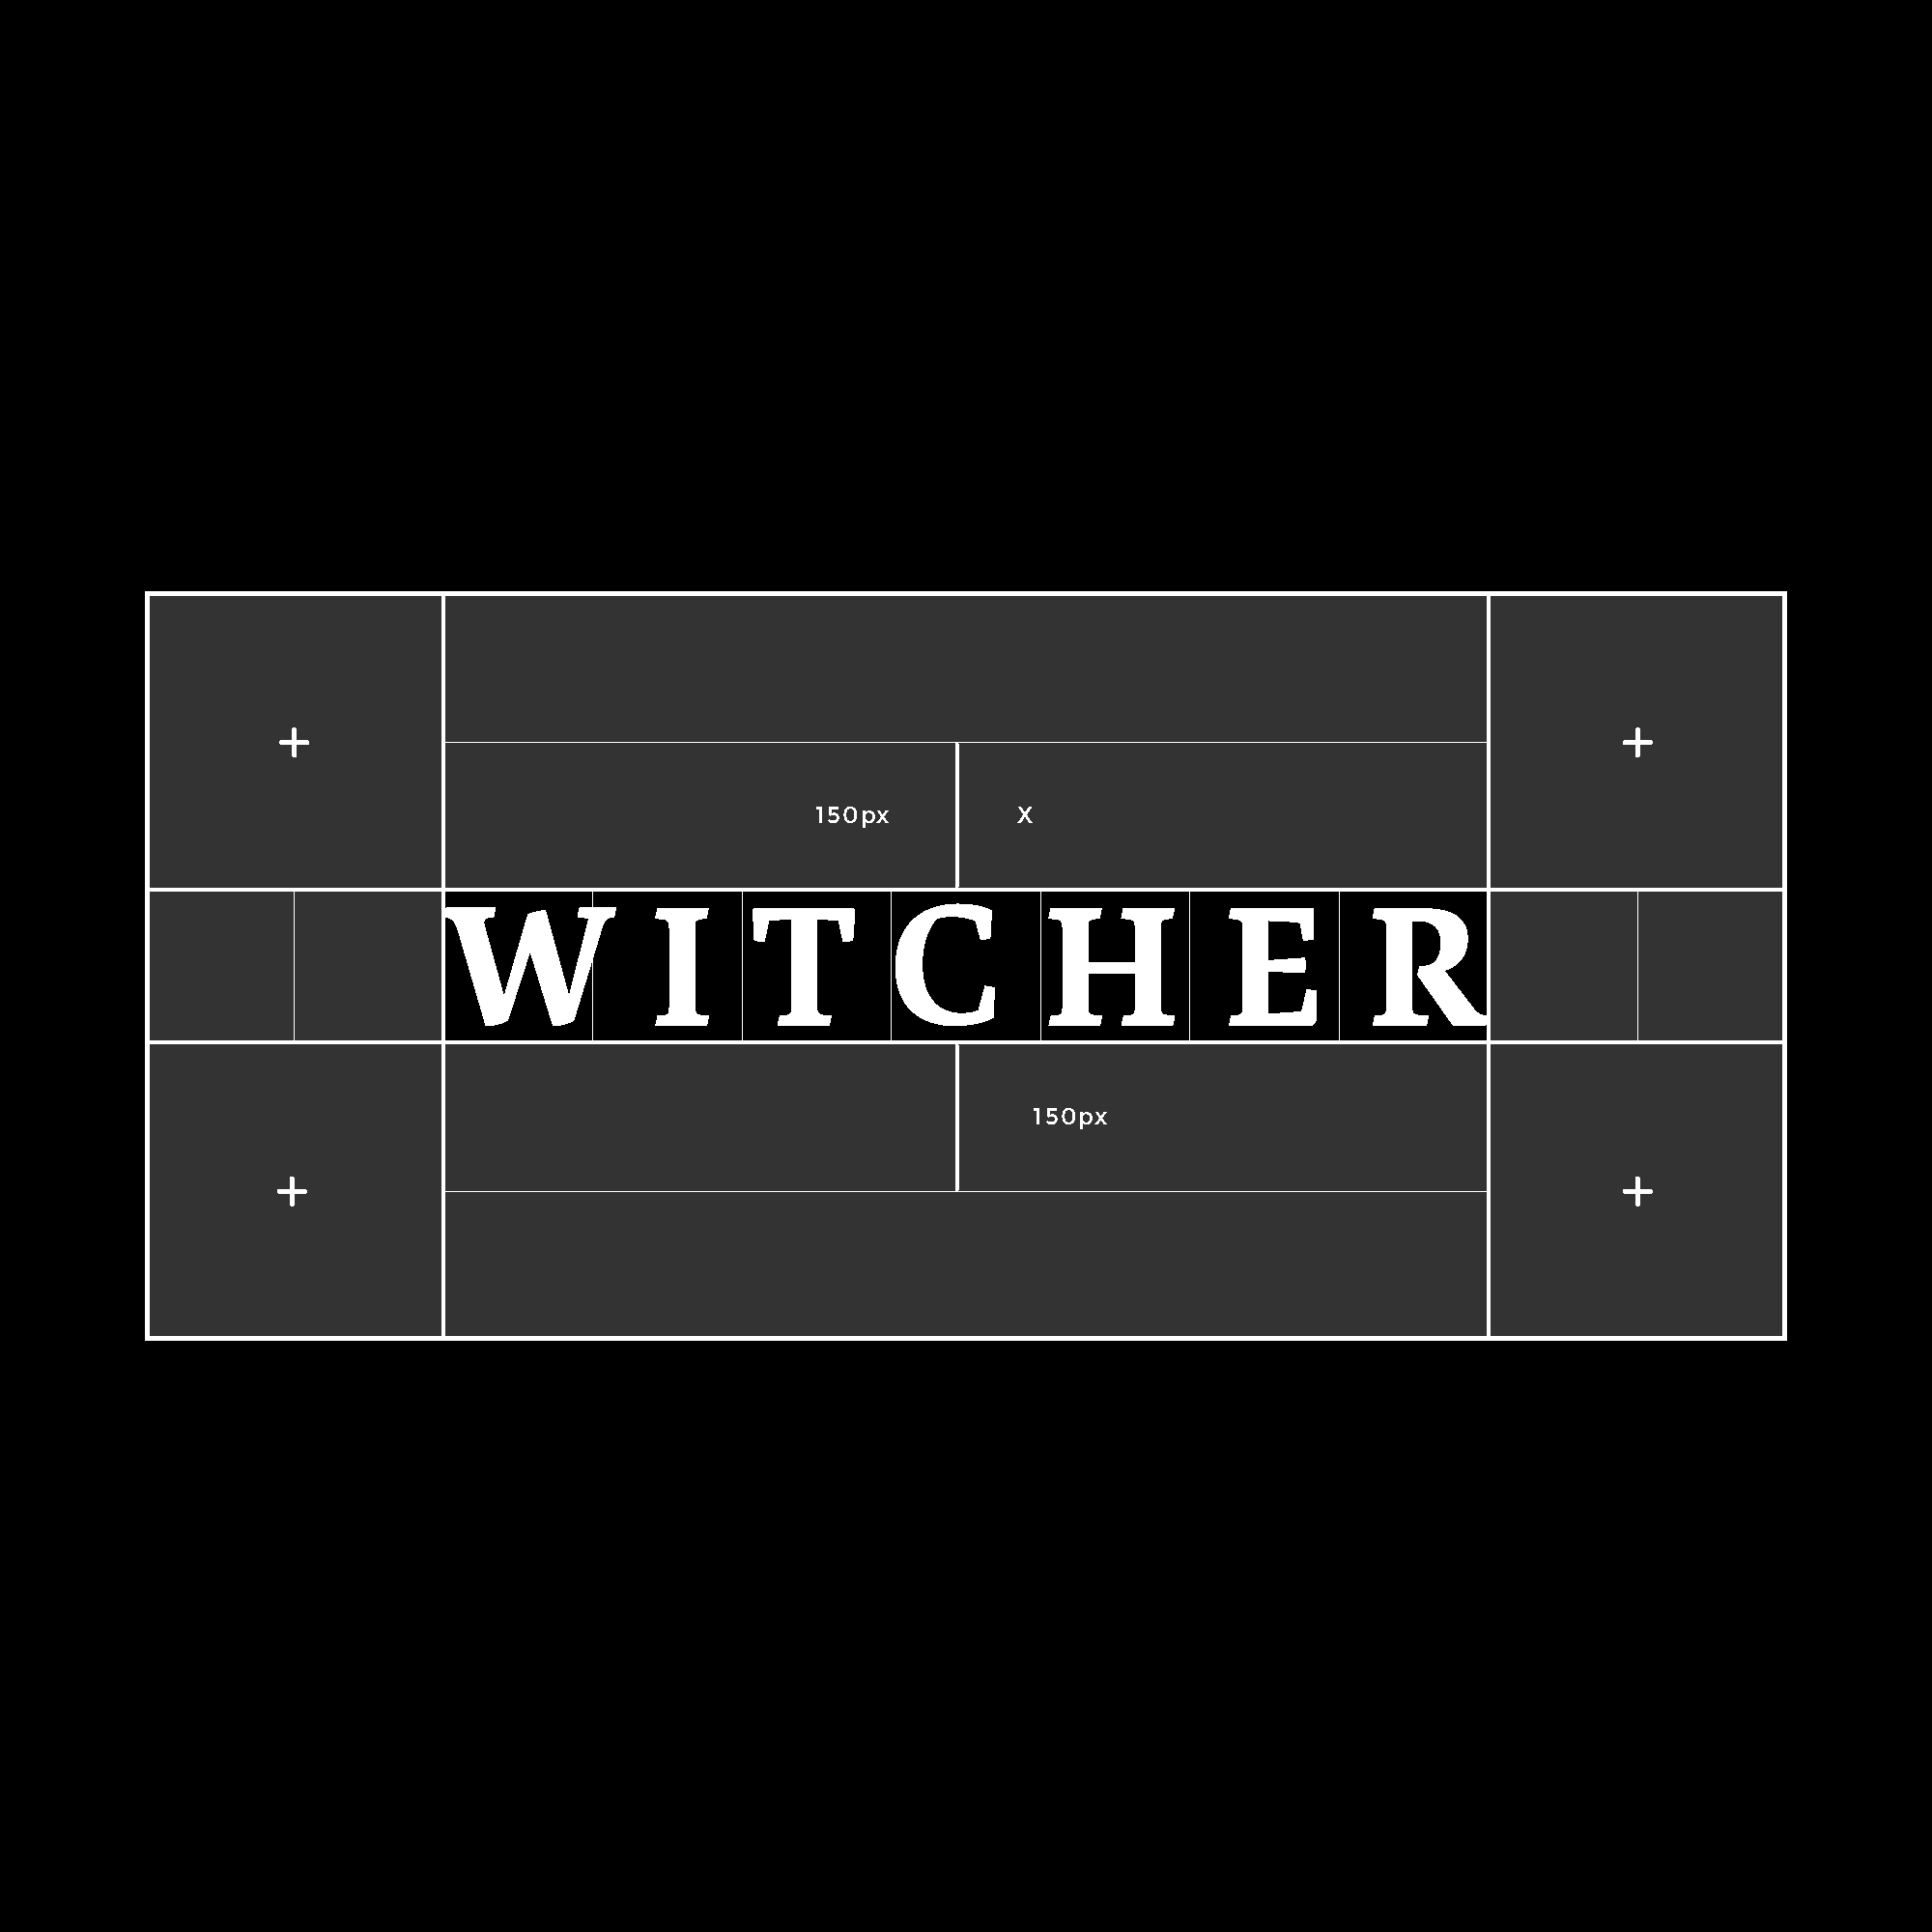 Witcher_Wordmark-Spacing